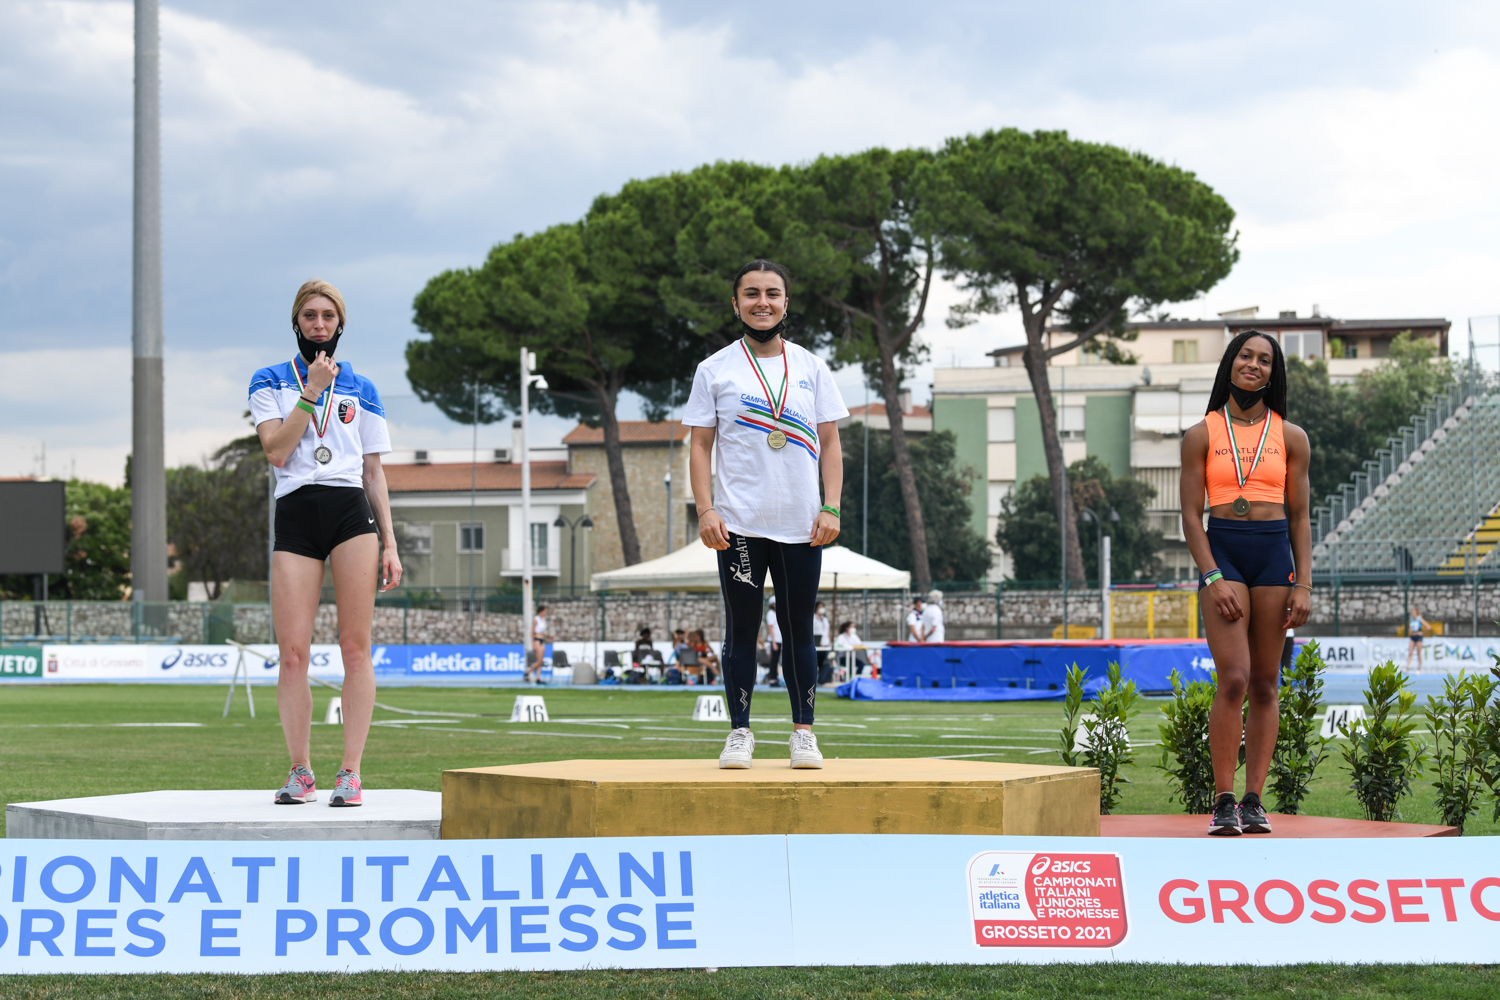 Antonella Todisco - Campionessa Italiana Junior 100m